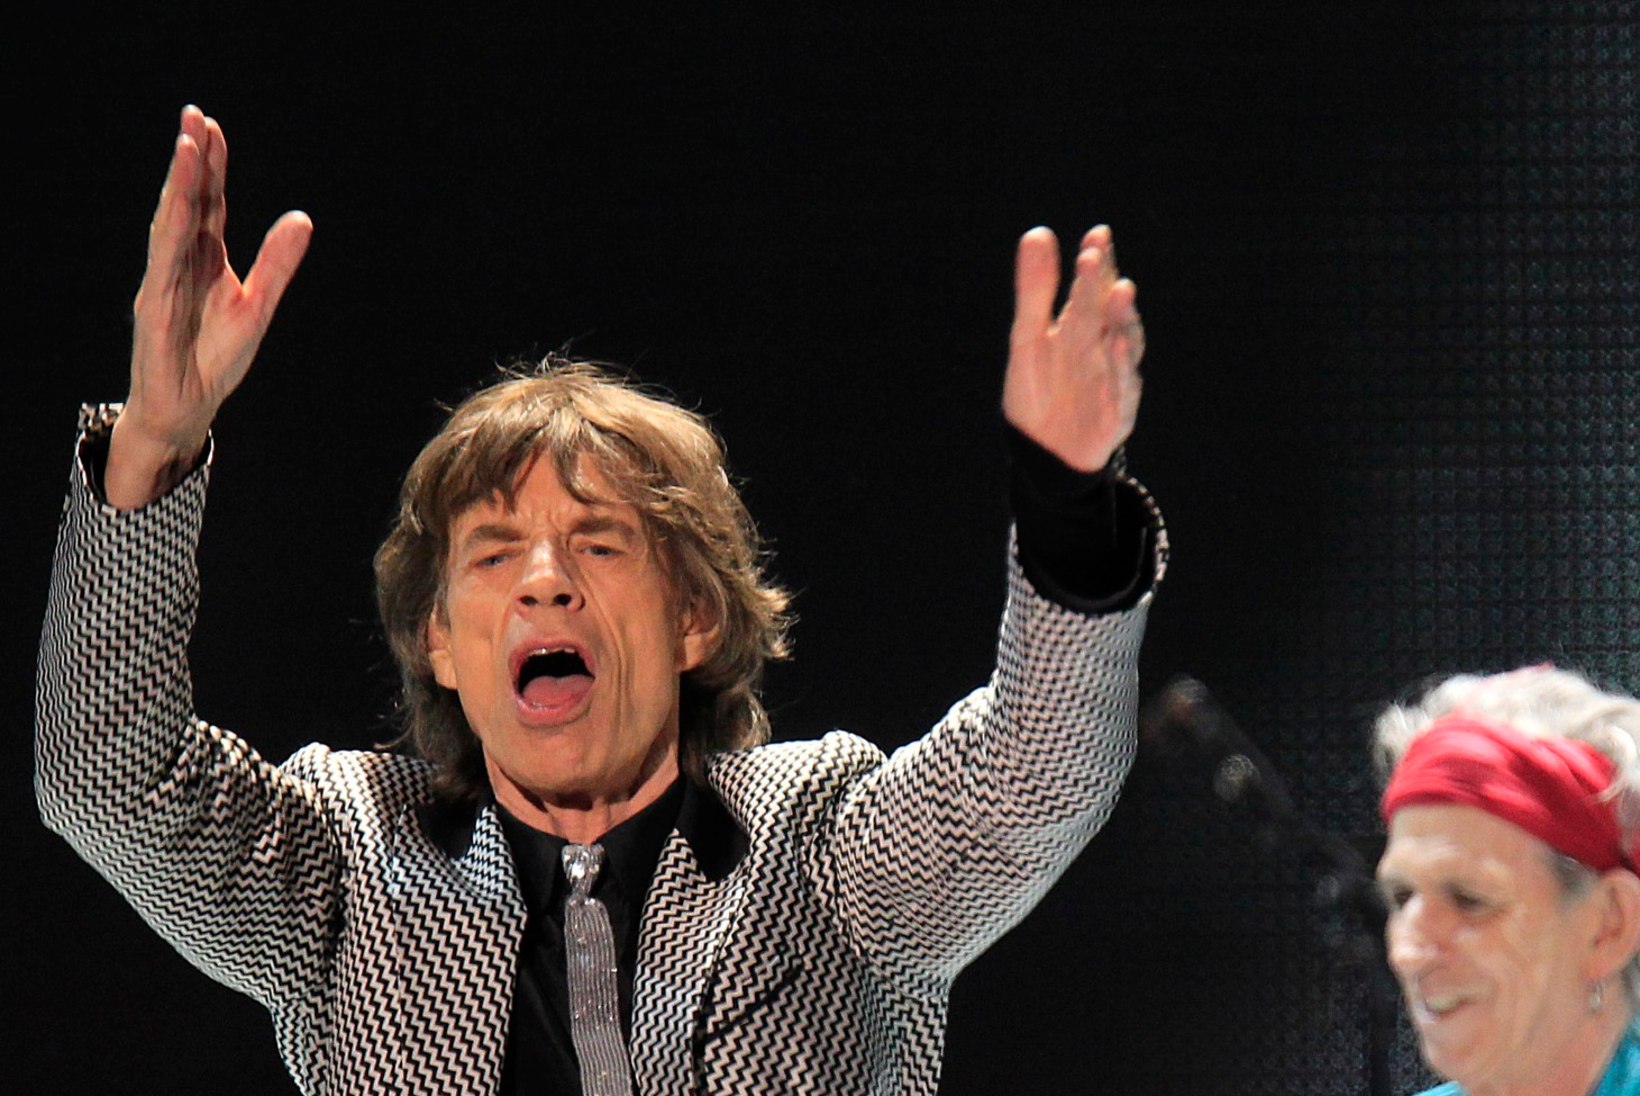 Keith Richards pole siiani vaevunud kuulama bändikaalslase Mick Jaggeri sooloalbumit